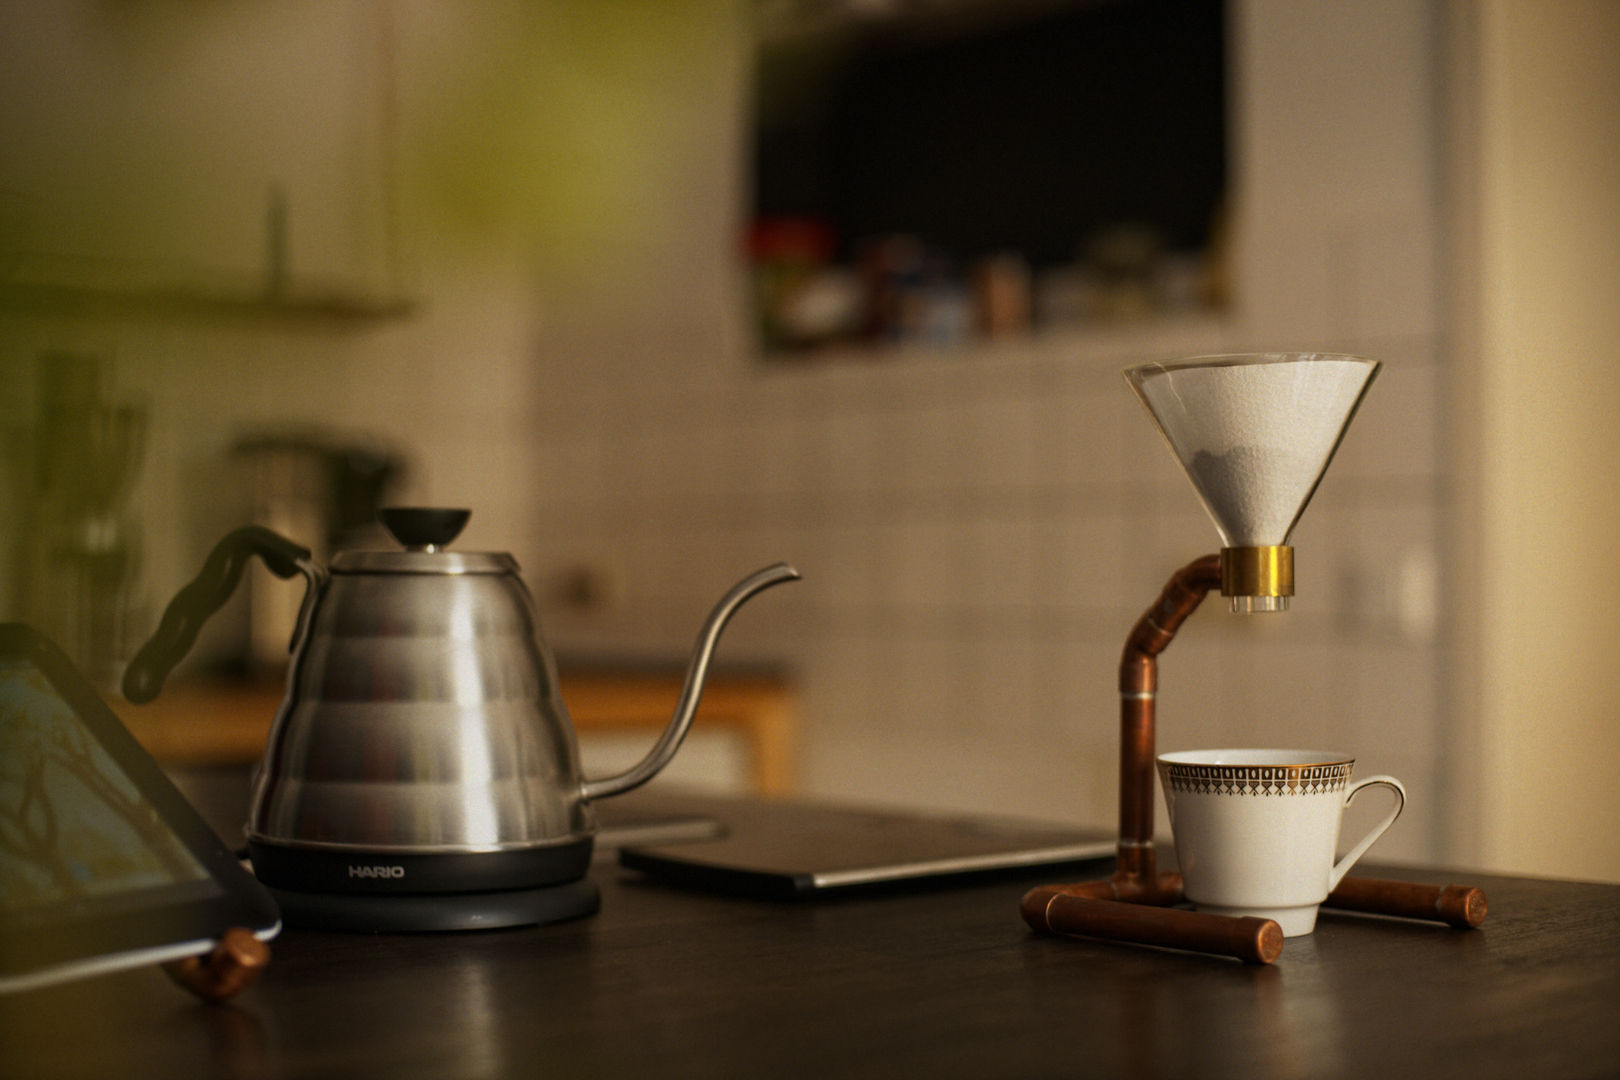 COPPER COFFEE - Dripper - Pour Over Coffee Stand, Drip Coffee Stand, COPPER COFFEE COPPER COFFEE مطبخ النحاس / برونزية / نحاس Kitchen utensils